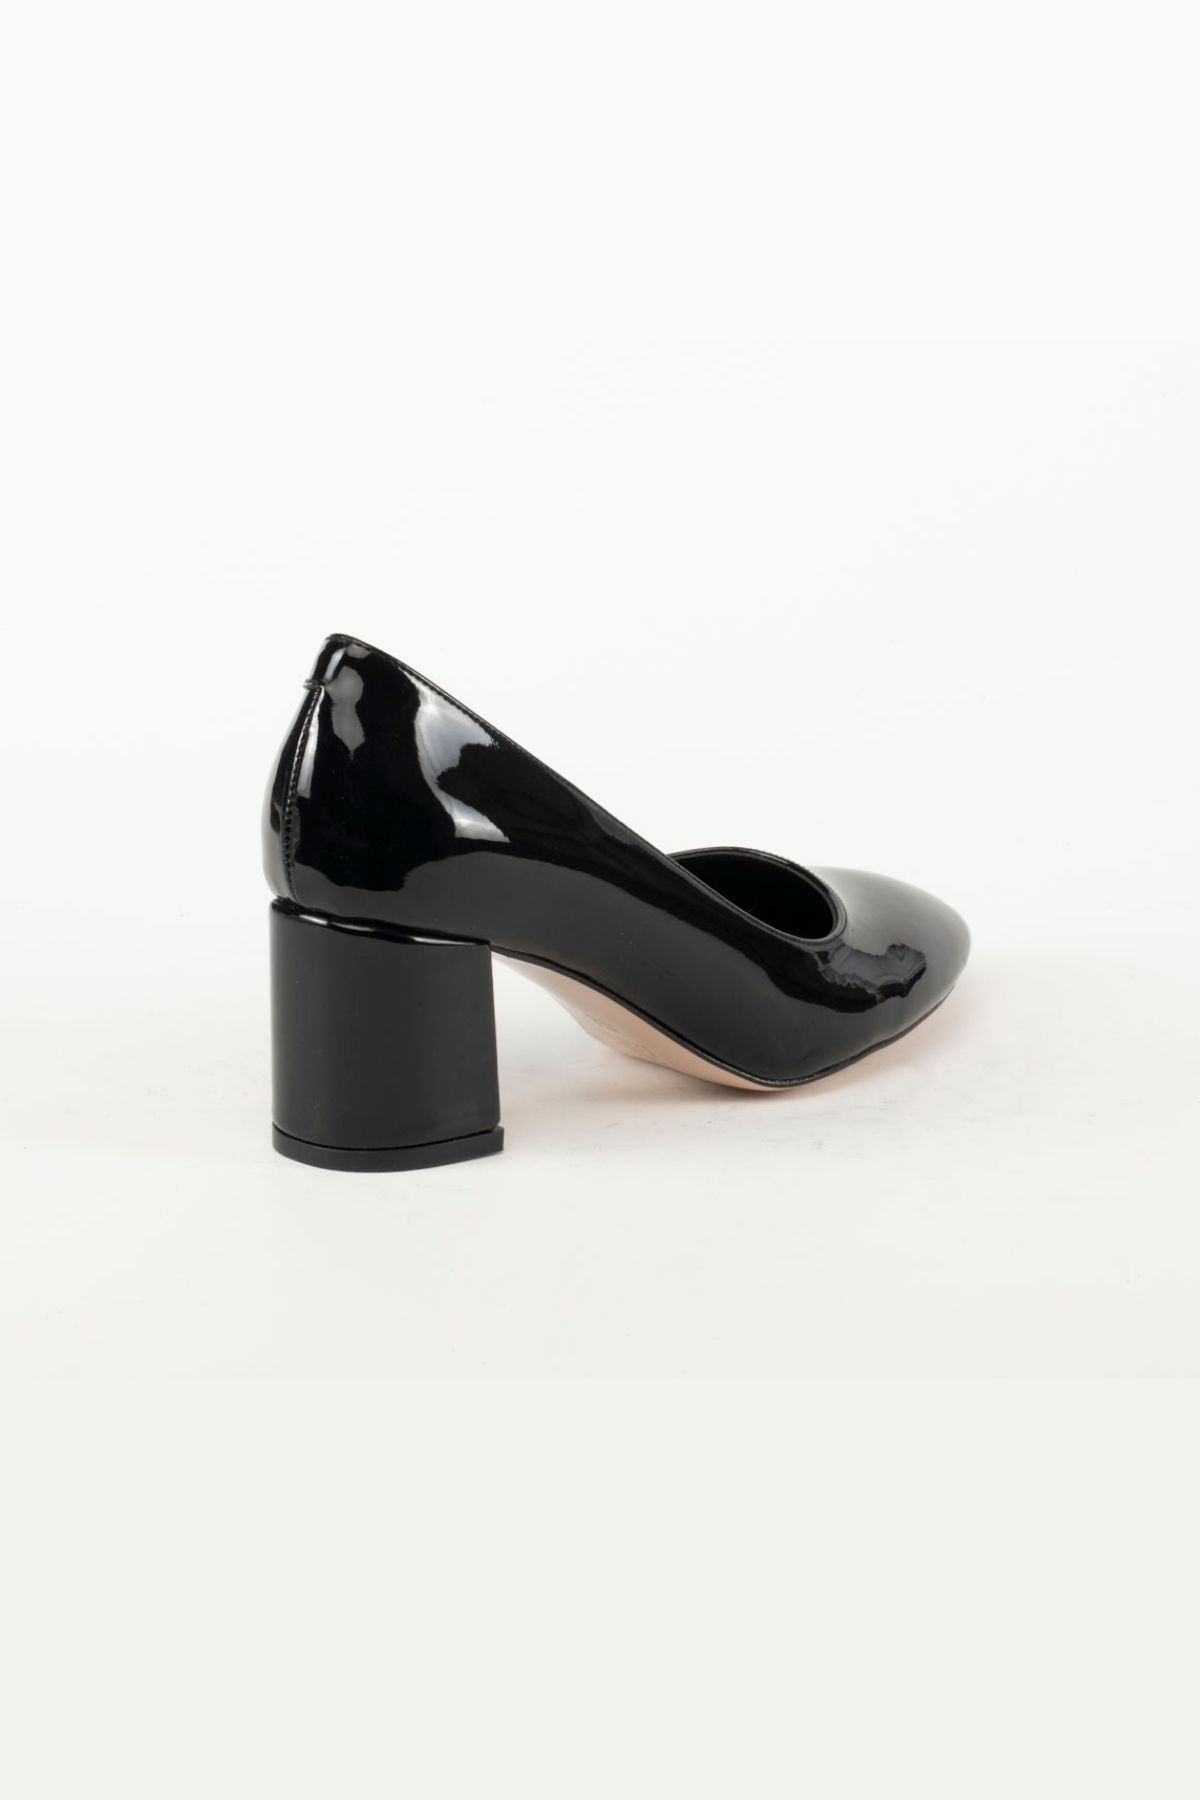 Kadın Ayakkabı Maria Gate Shoes -Siyah